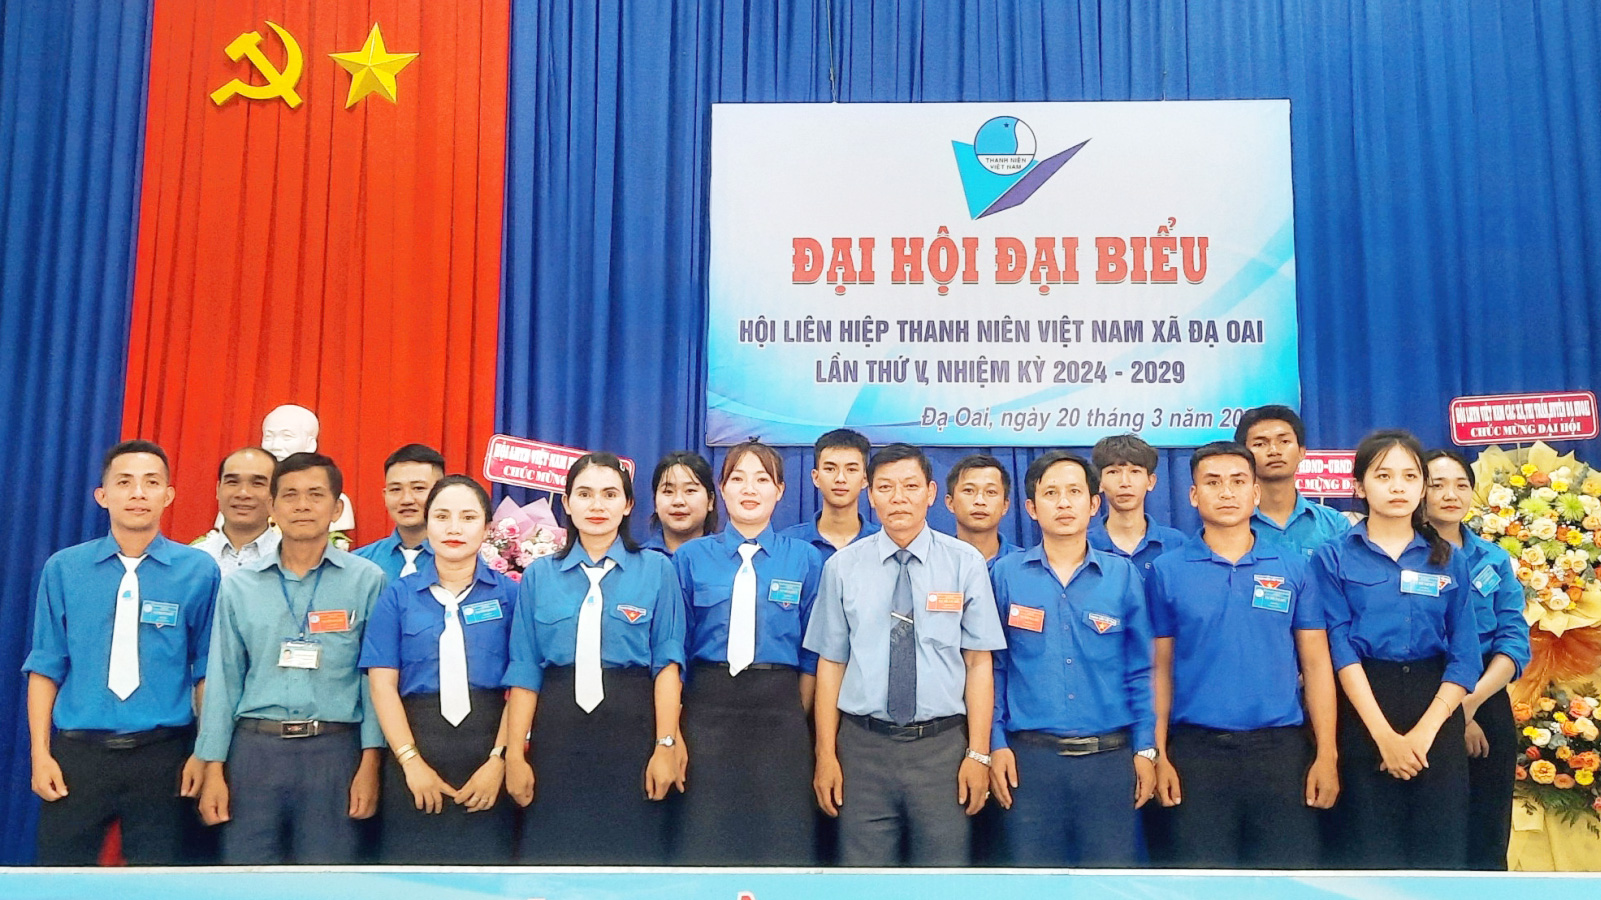 Ủy ban Hội LHTN Việt Nam xã Đạ Oai được chọn là đơn vị đại hội điểm cấp cơ sở của huyện